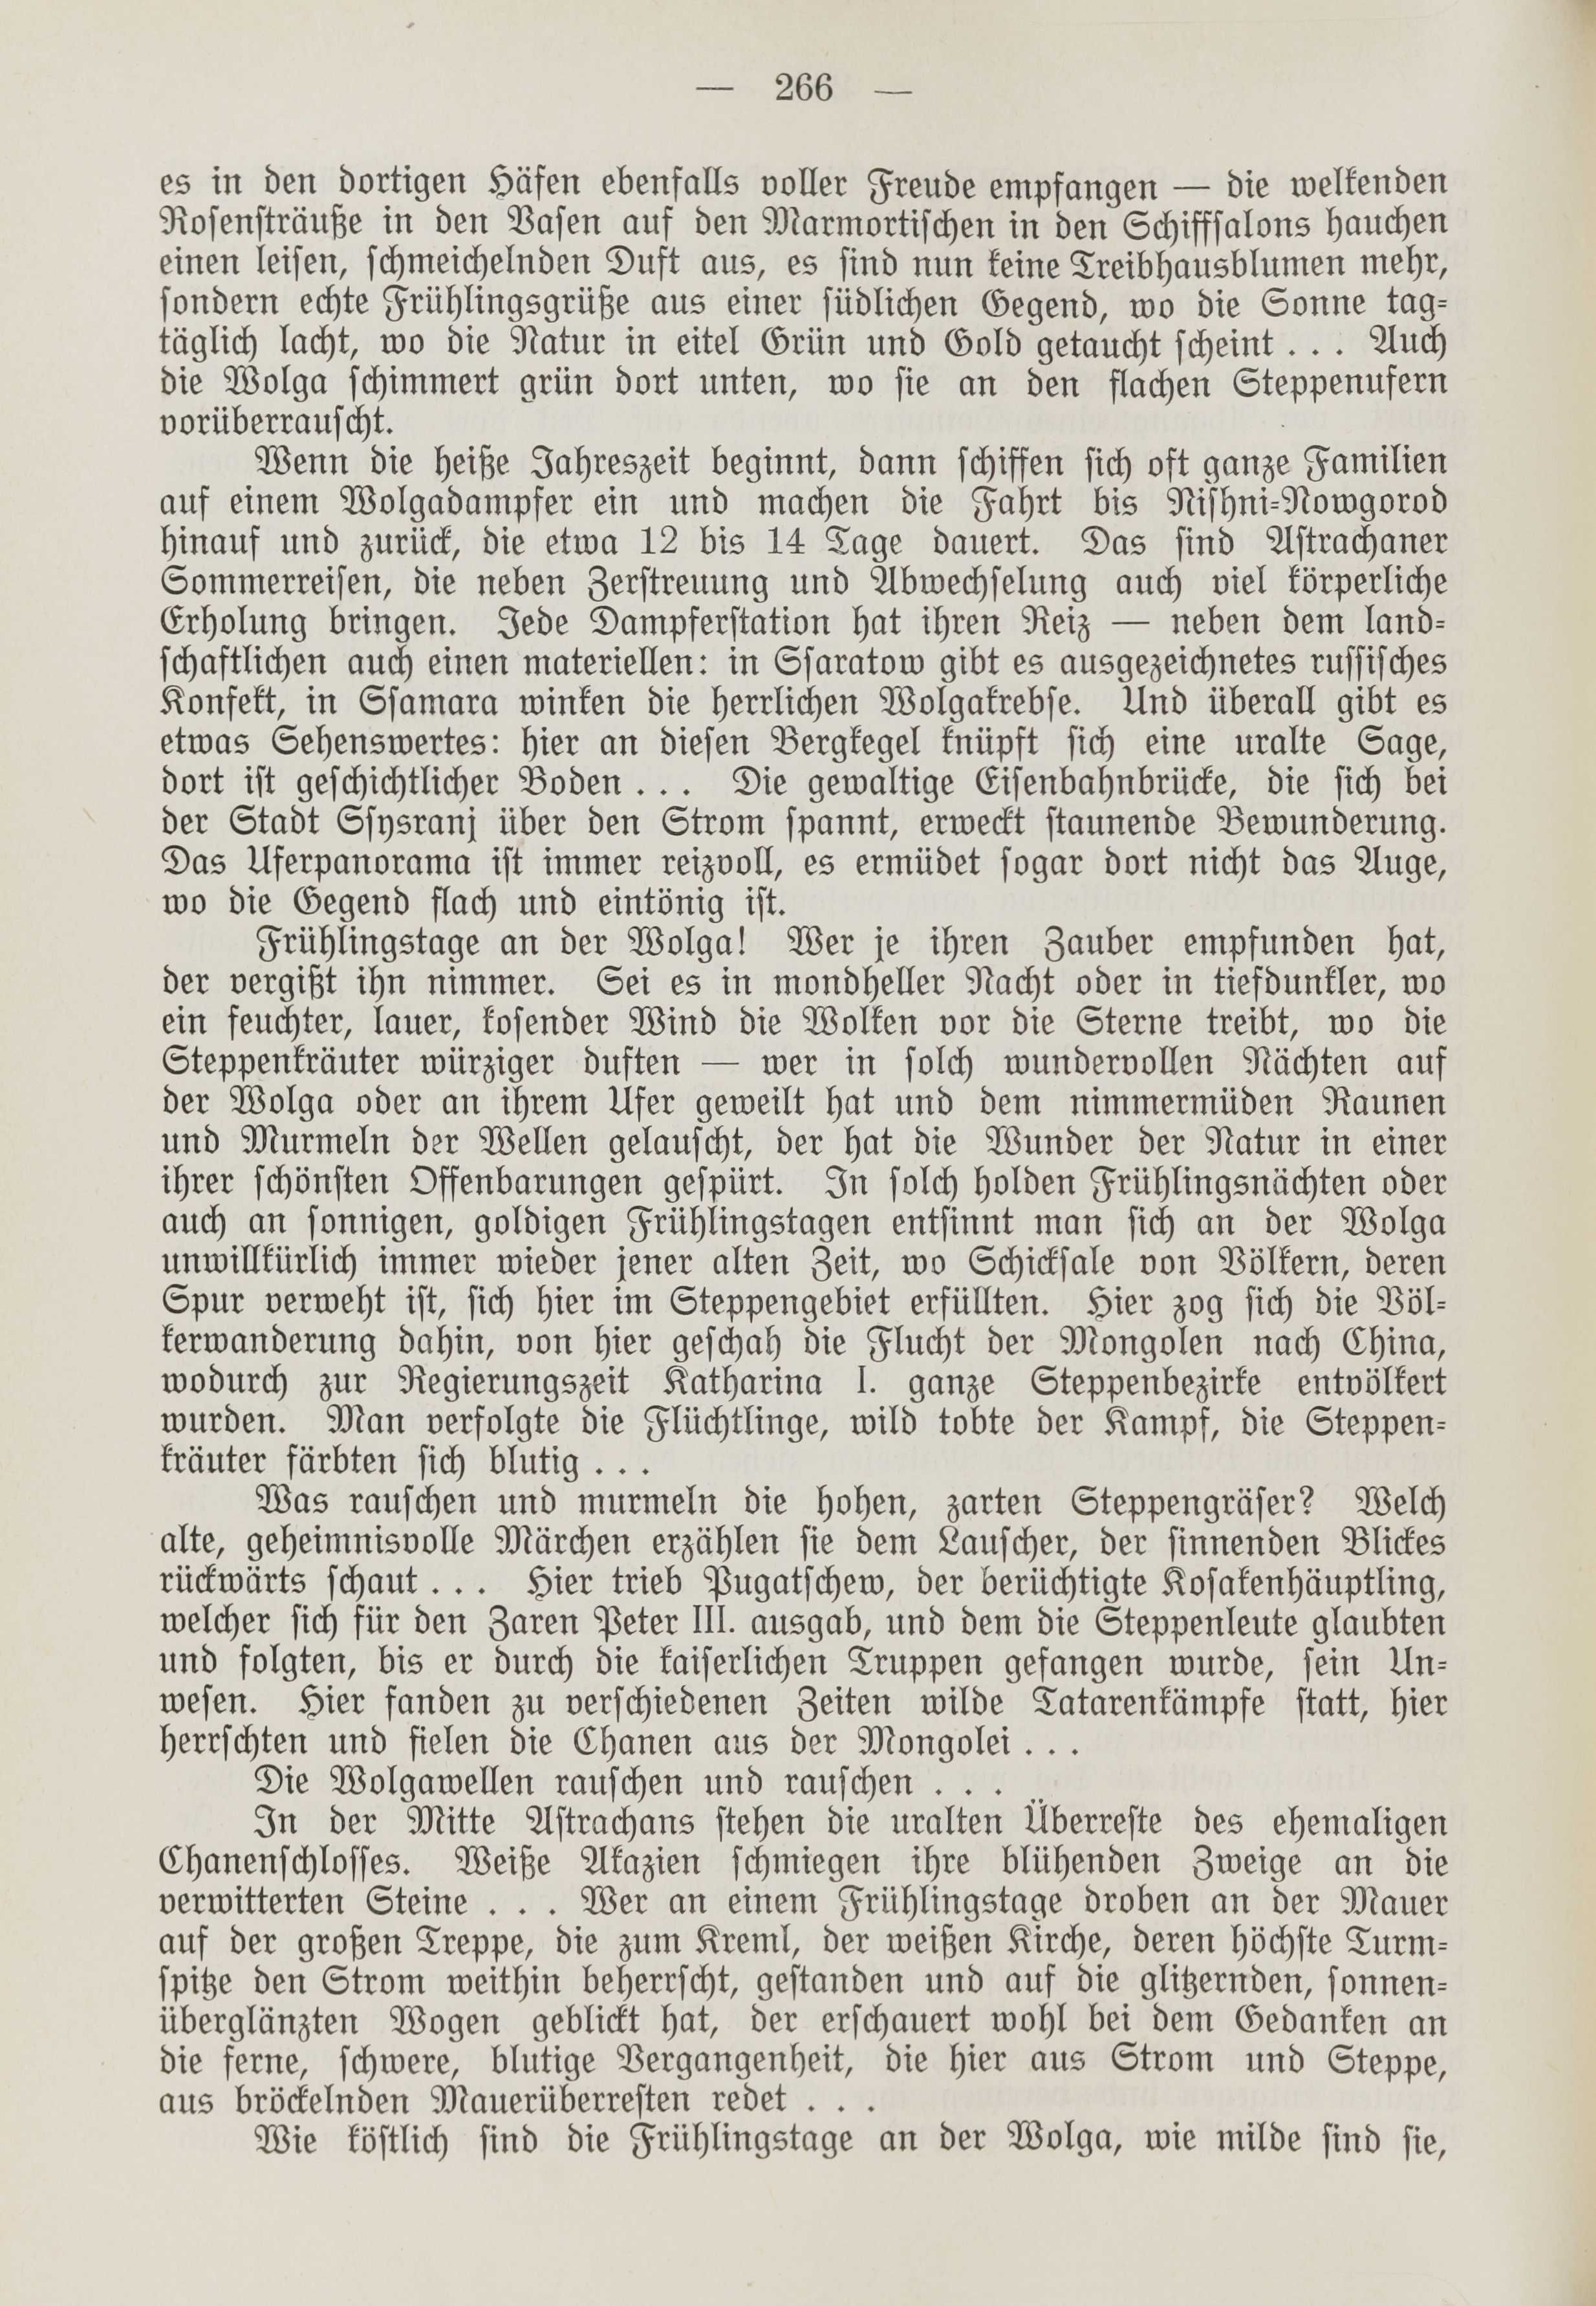 Deutsche Monatsschrift für Russland [1] (1912) | 274. (266) Основной текст